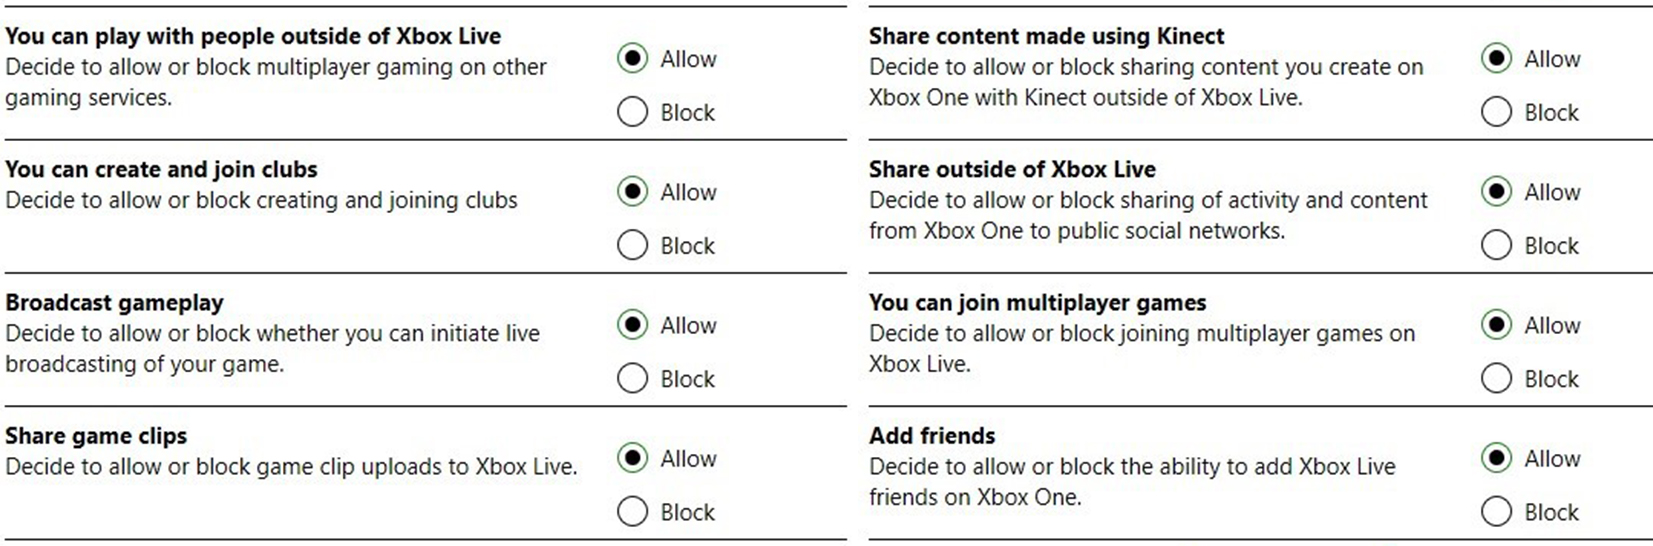 Liste unterschiedlicher Jugendschutz-Einstellungen auf Xbox One, die man in Zeiten von COVID-19 anpassen kann, um Gaming sicher zu gestalten.